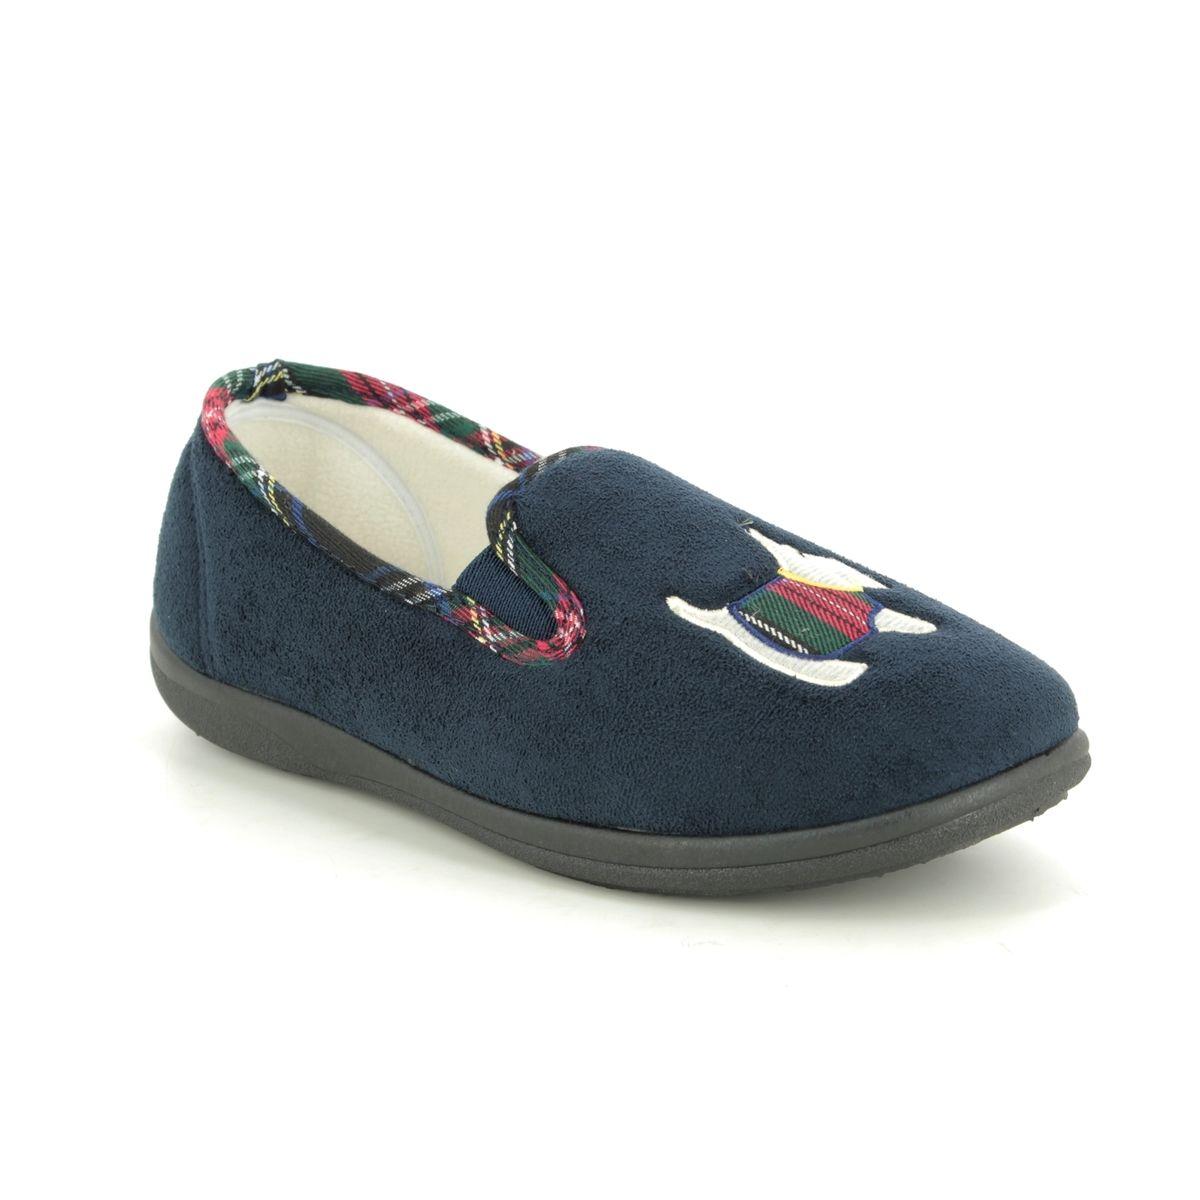 Padders Dandie Ee-eee Navy Womens slippers 4082-24 in a Plain Microsuede in Size 8